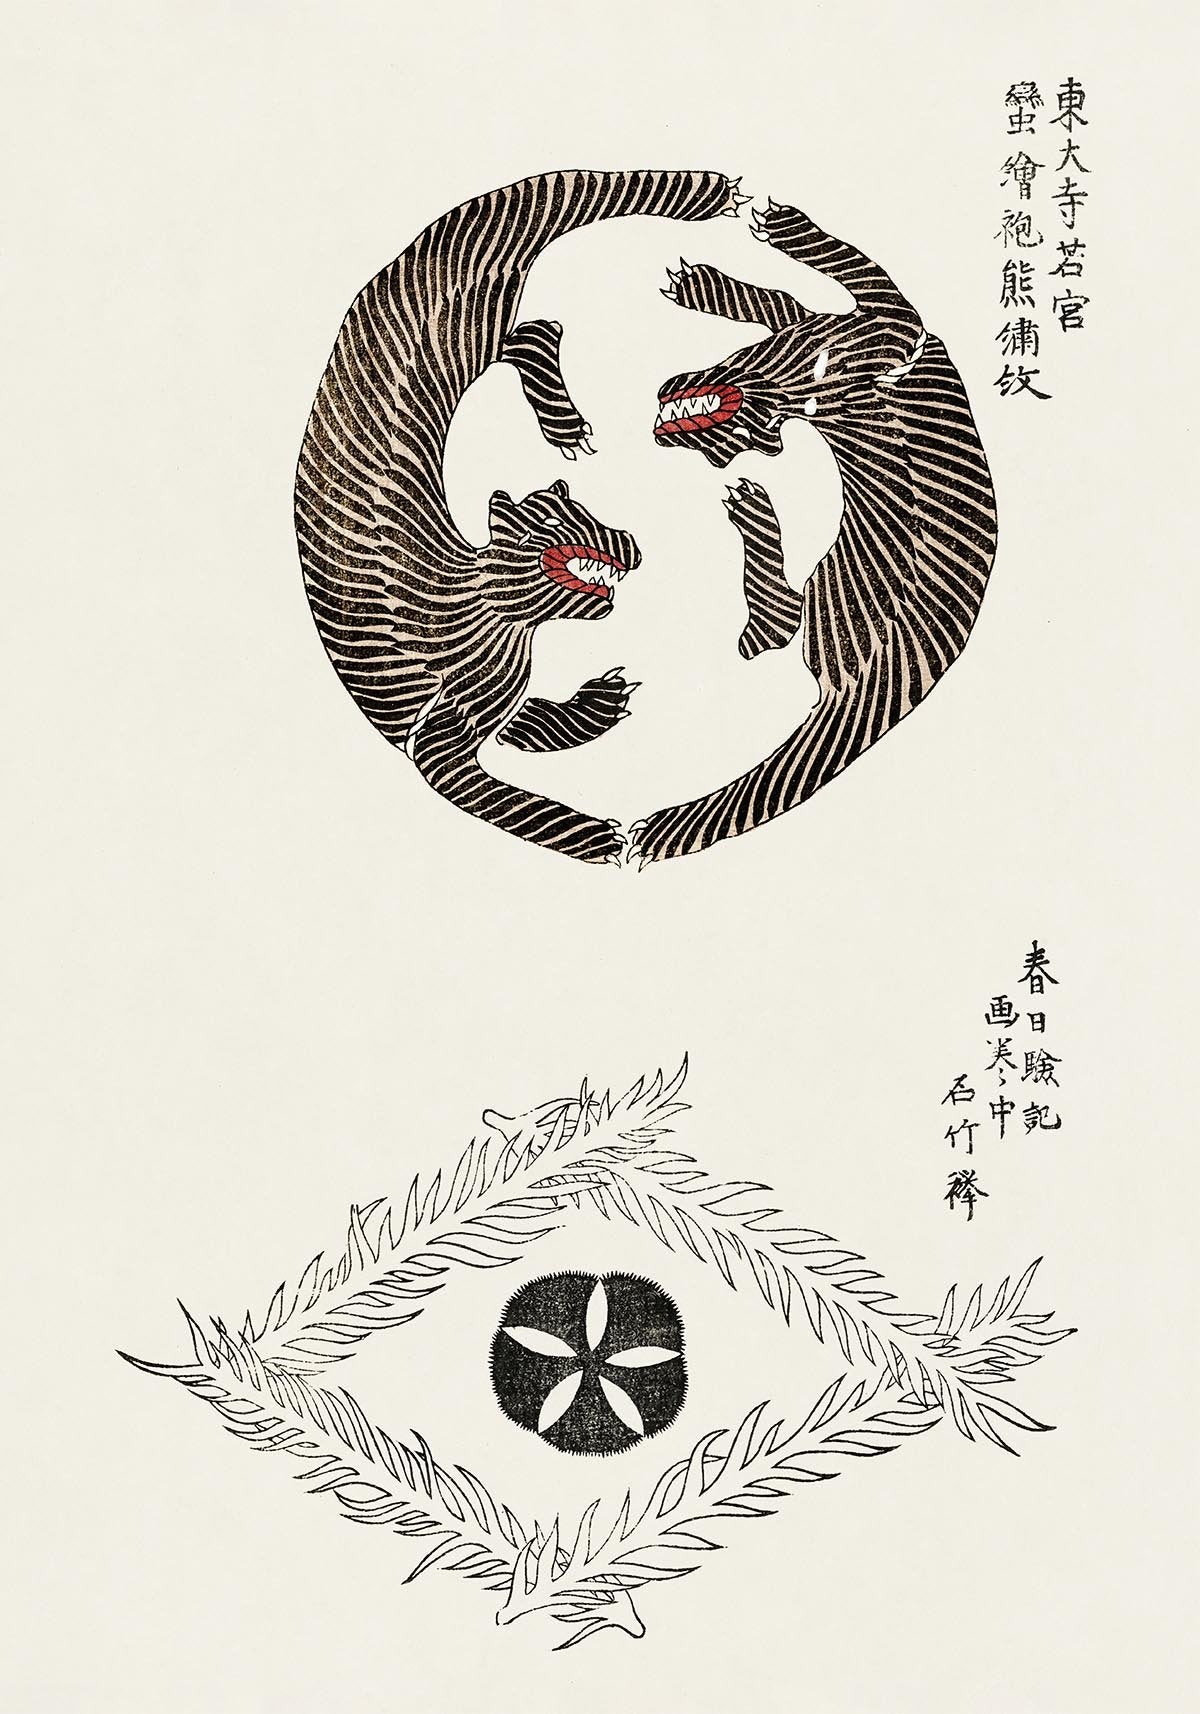 Vintage Japanese Woodblock Print Nr 15